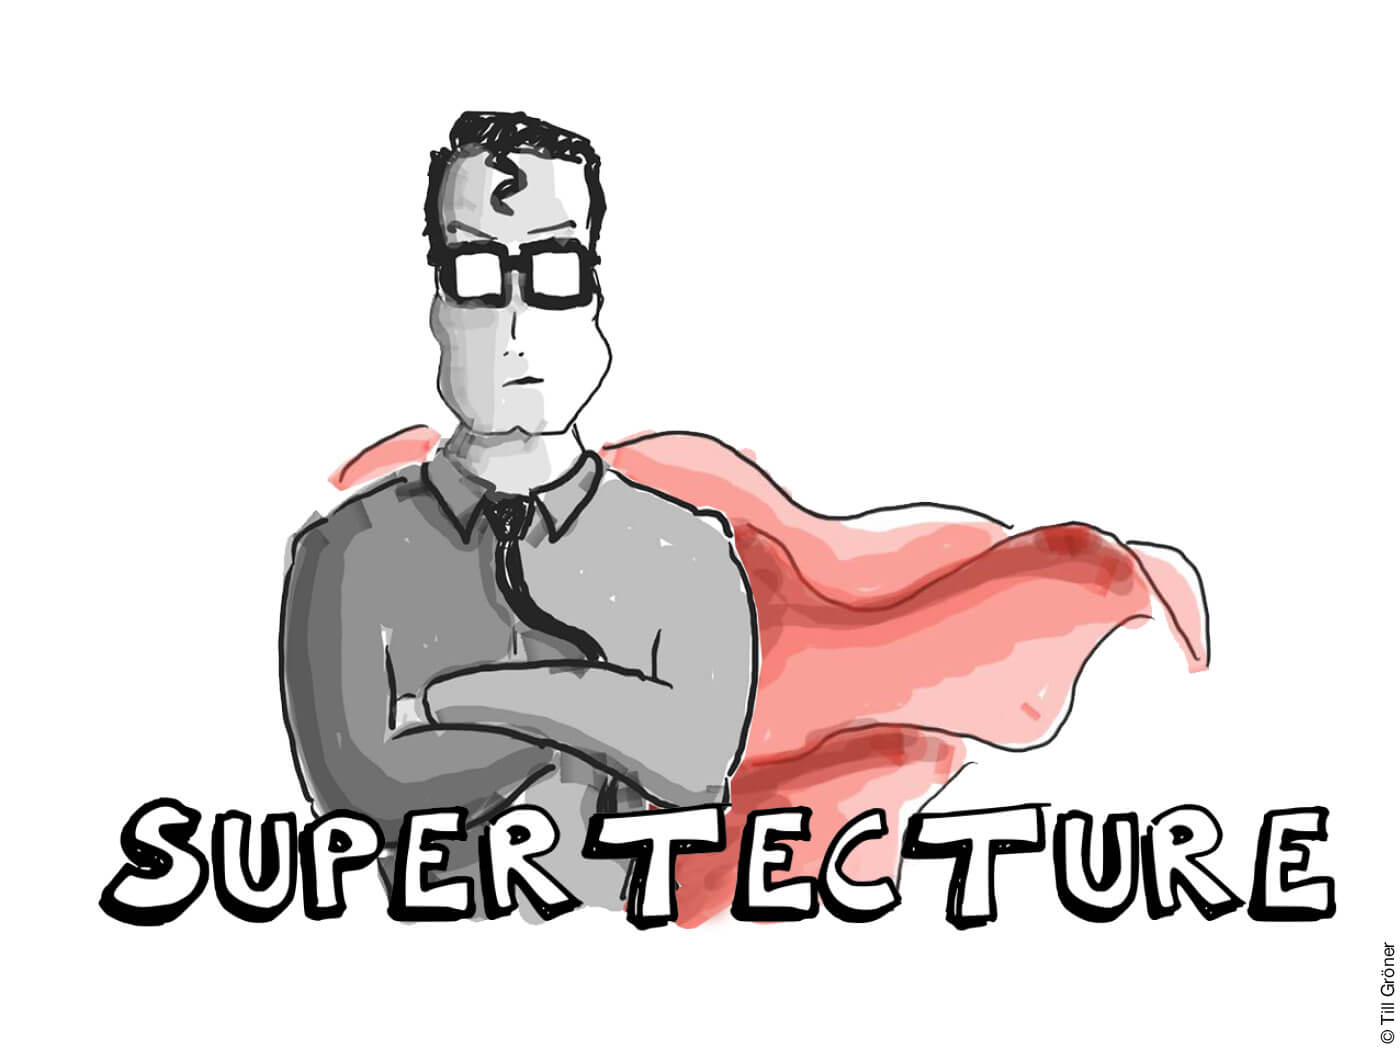 Zeichung eines Superhelden, darunter der Schriftzug "Supertecture"